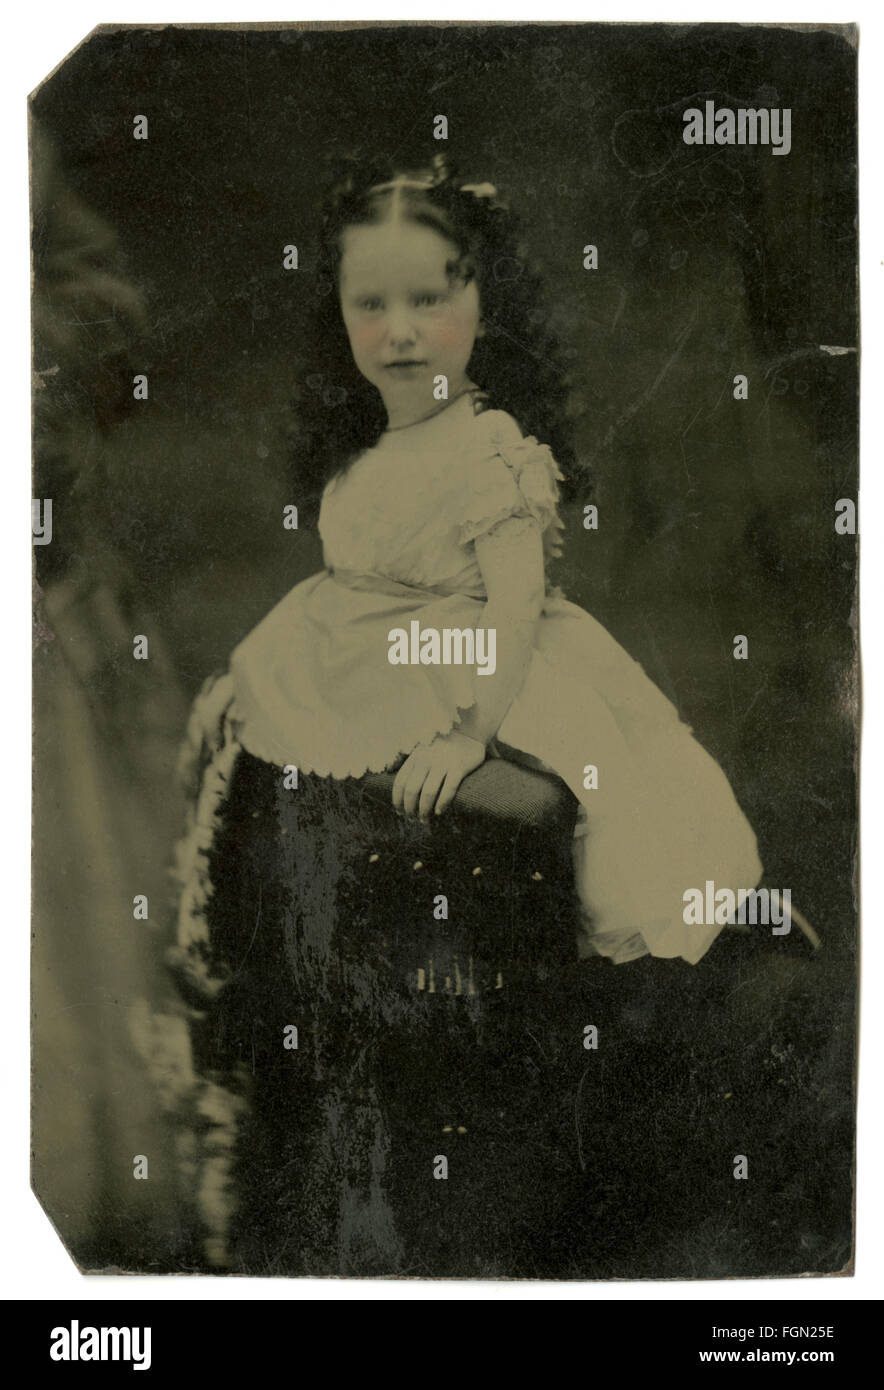 Circa 1860 tintype fotografía, joven edad 5-8 teñido con las mejillas sonrosadas. Fuente: IMAGEN TINTYPE ORIGINAL. Foto de stock